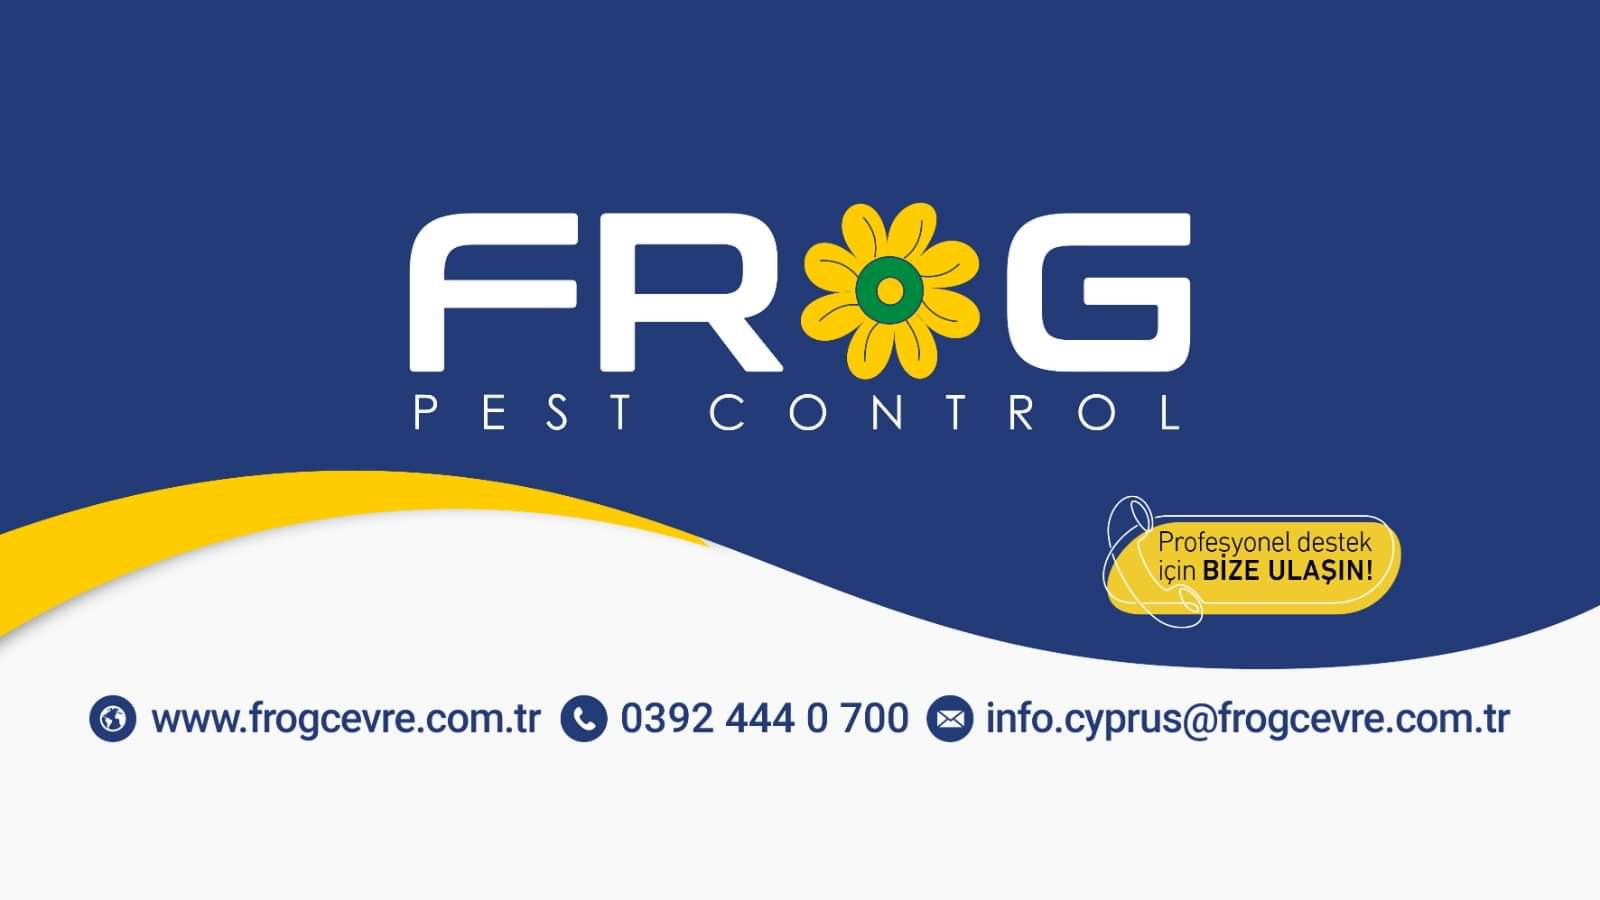 Frog Temizlik ve Hizmet Ticaret Şti.Ltd. (Frog Pest Control)